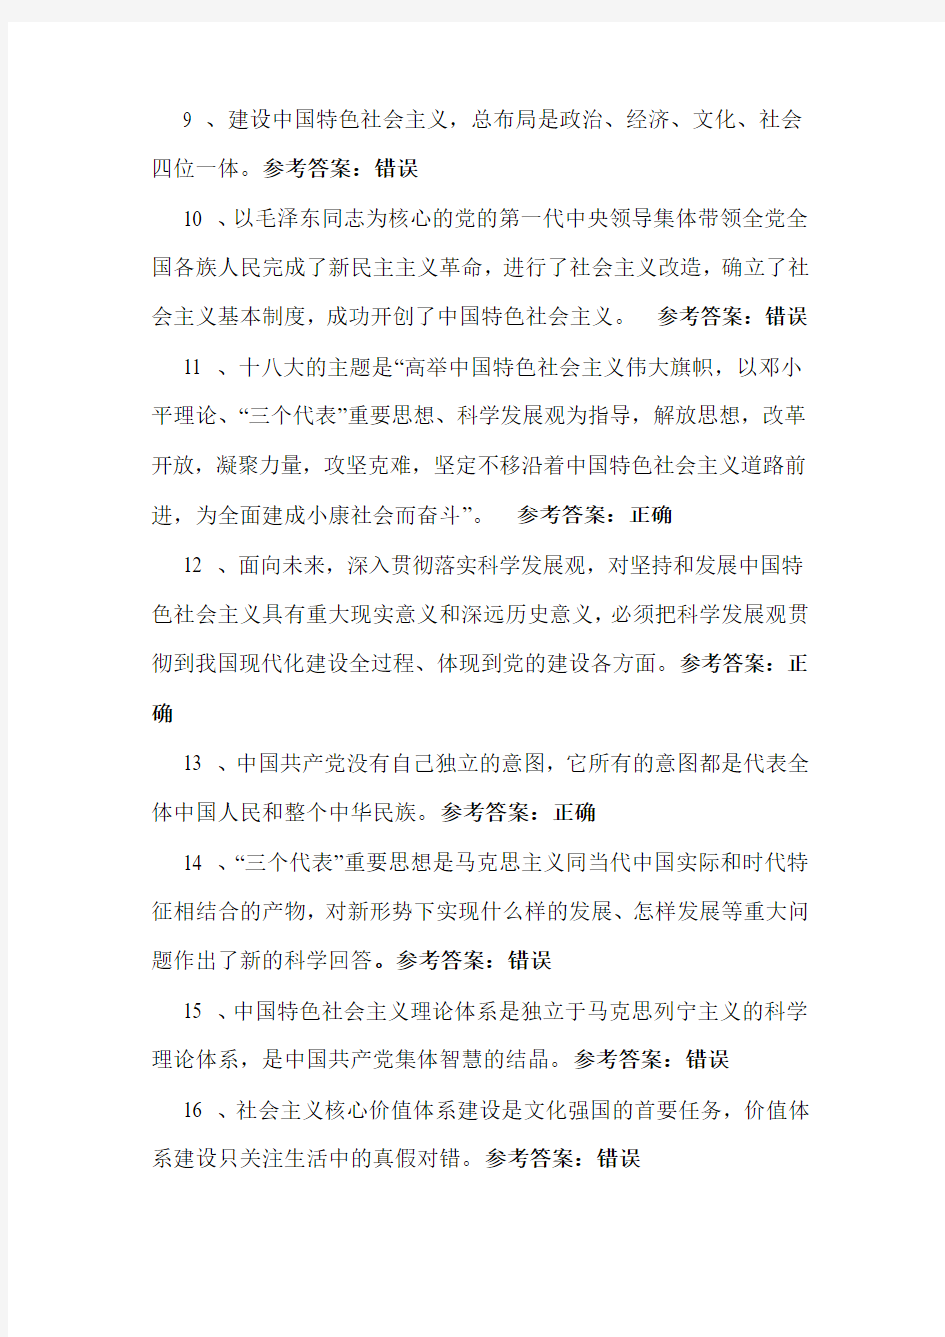 2013年河南安阳专业技术人员公需课考试题库及答案(完全整理版)